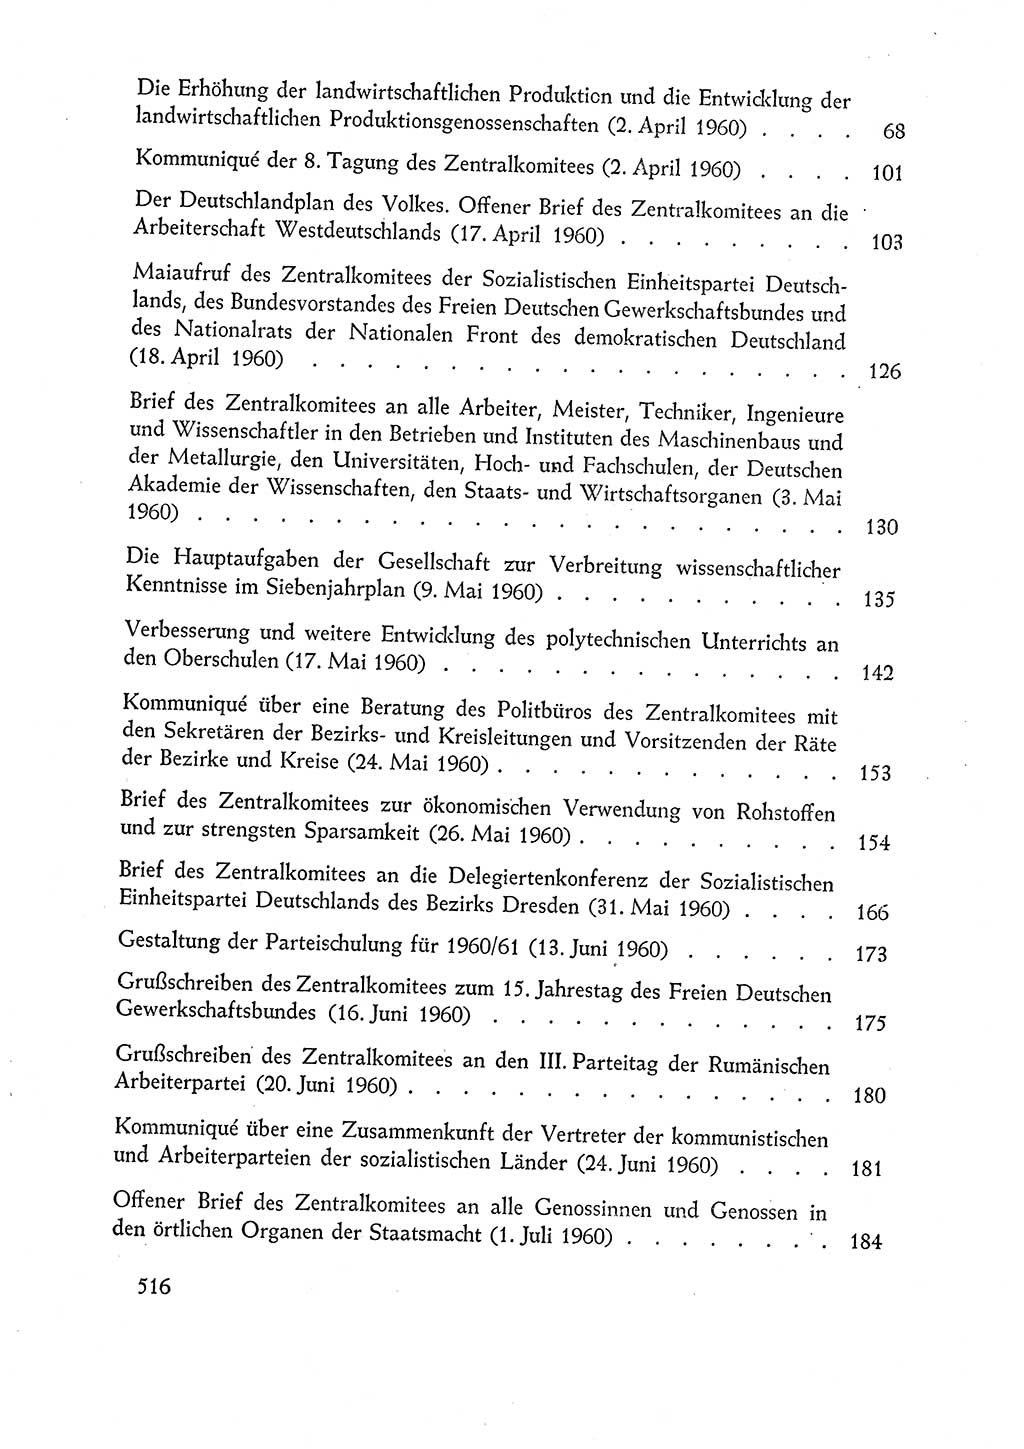 Dokumente der Sozialistischen Einheitspartei Deutschlands (SED) [Deutsche Demokratische Republik (DDR)] 1960-1961, Seite 516 (Dok. SED DDR 1960-1961, S. 516)